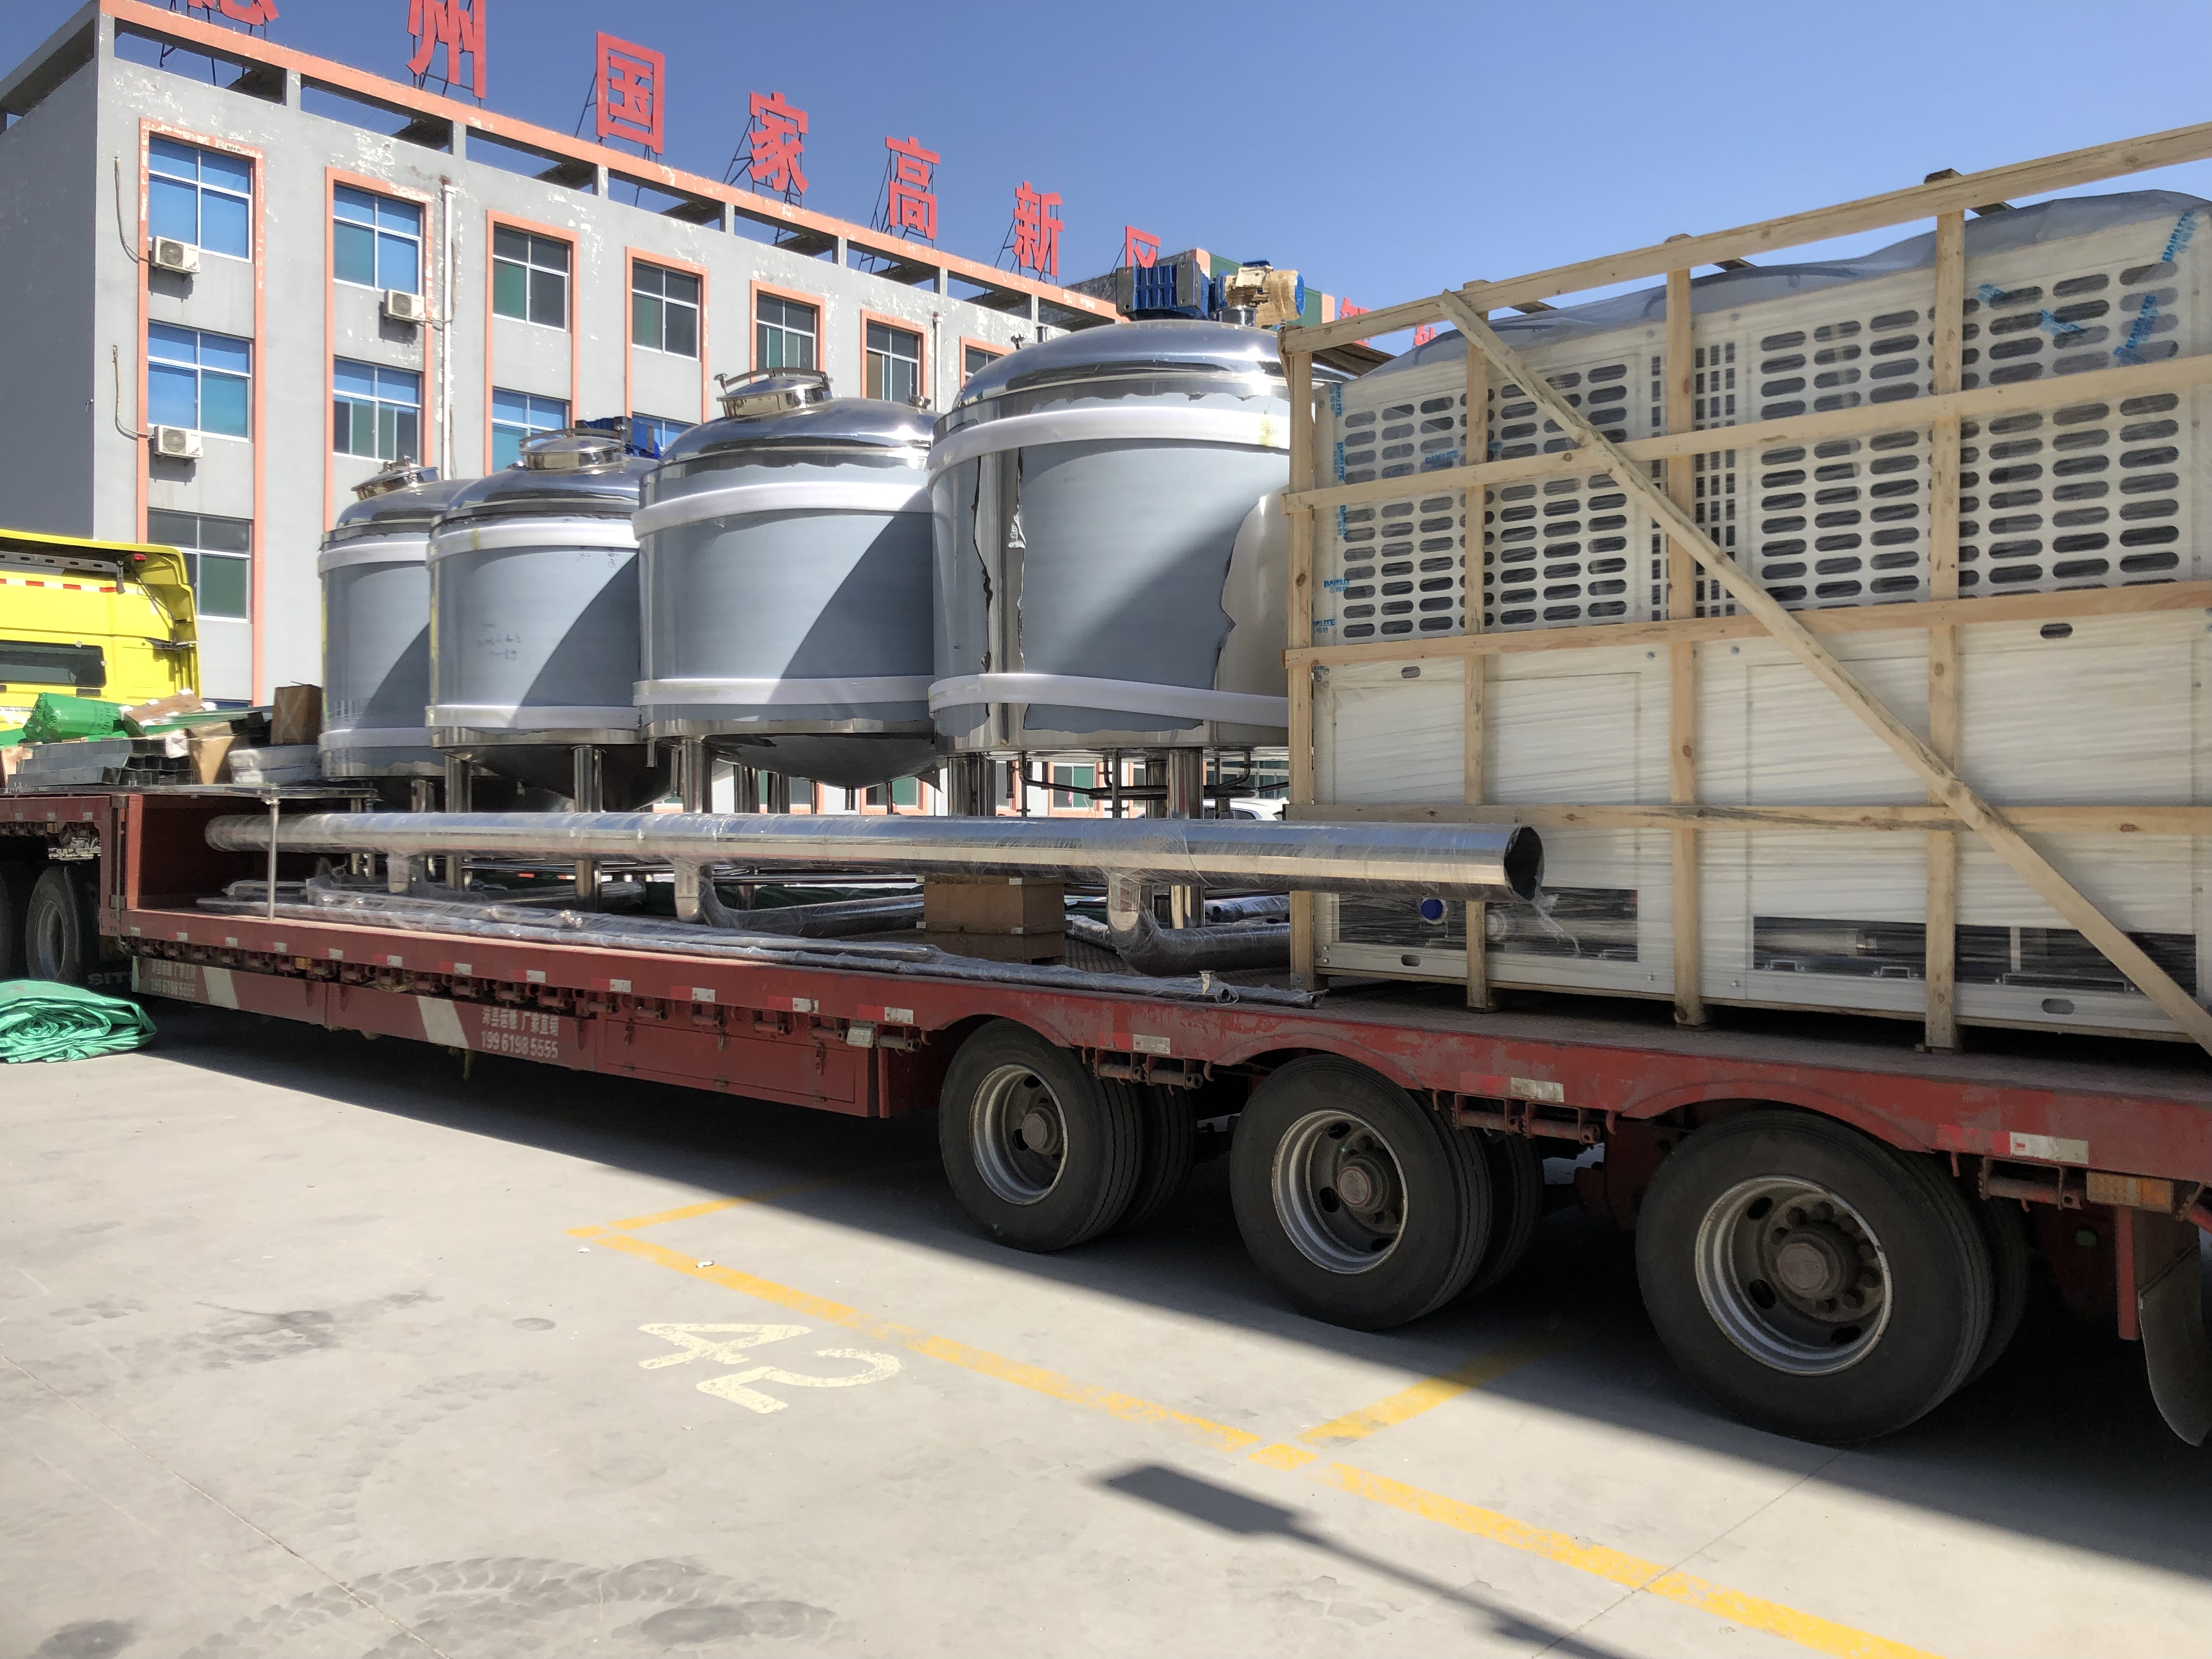 Transport av inhemsk 2500L bryggeriutrustning till Guangzhou